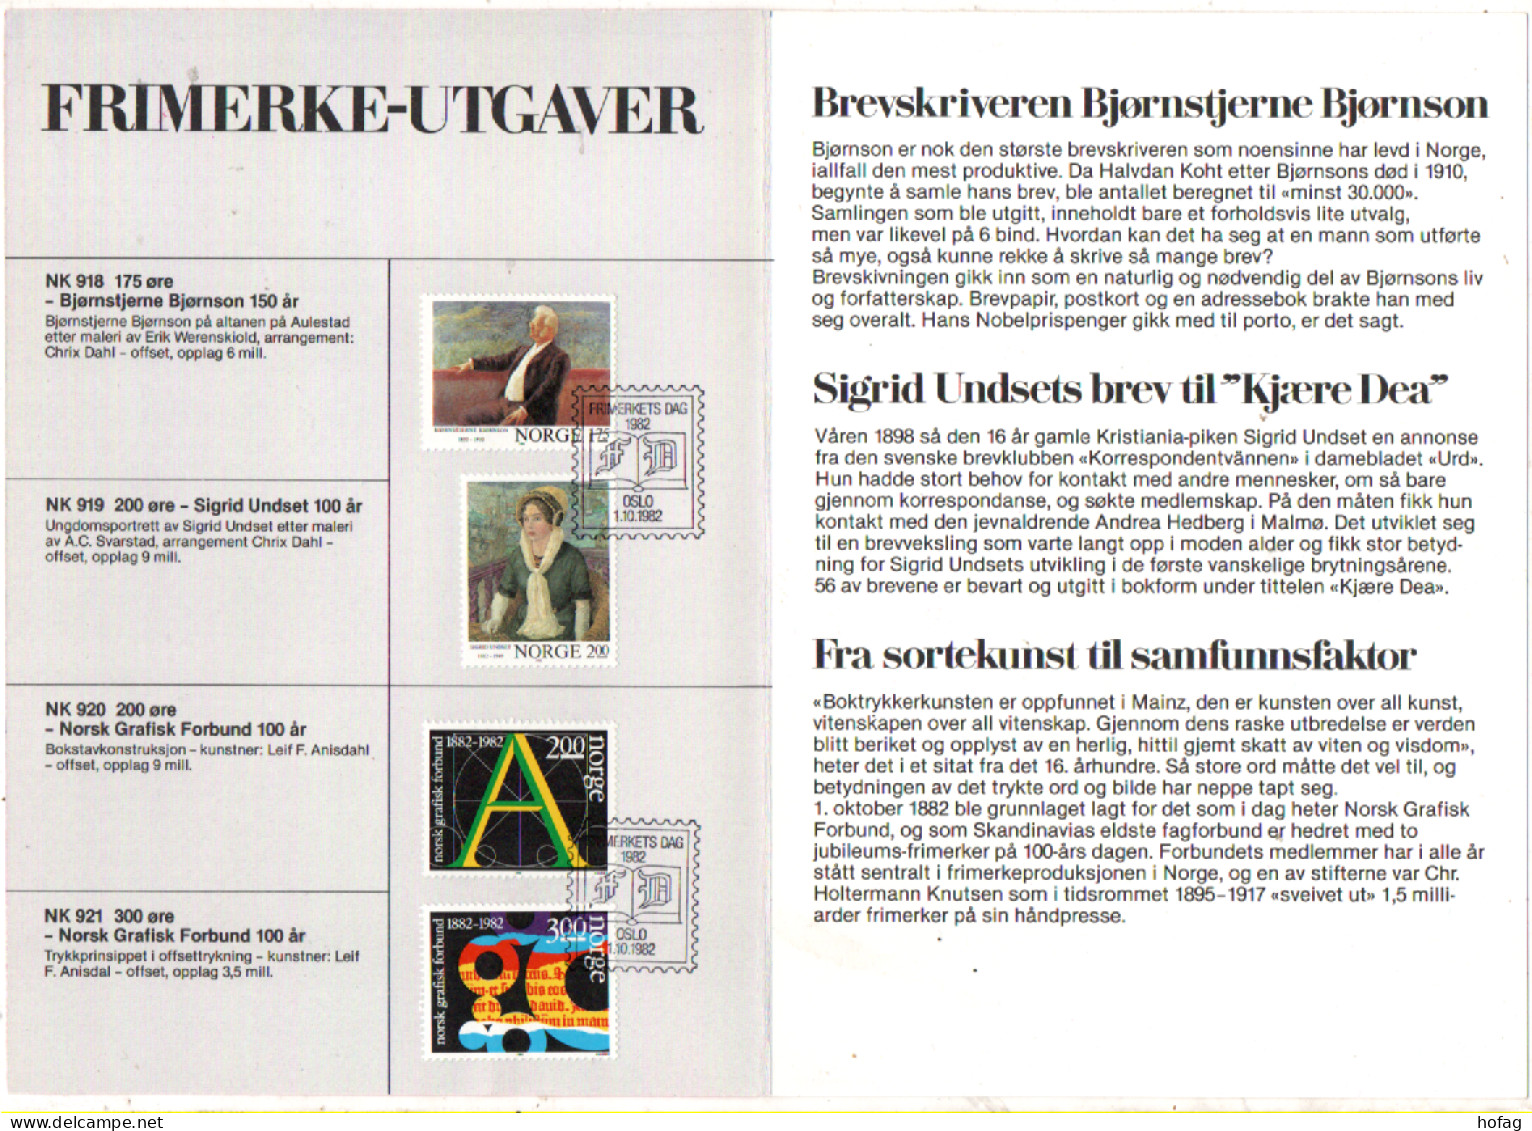 Norwegen 1982 Det Skrevne Ord Motivblad 1 Sonderstempel Frimerkets Dag; Norway - Storia Postale